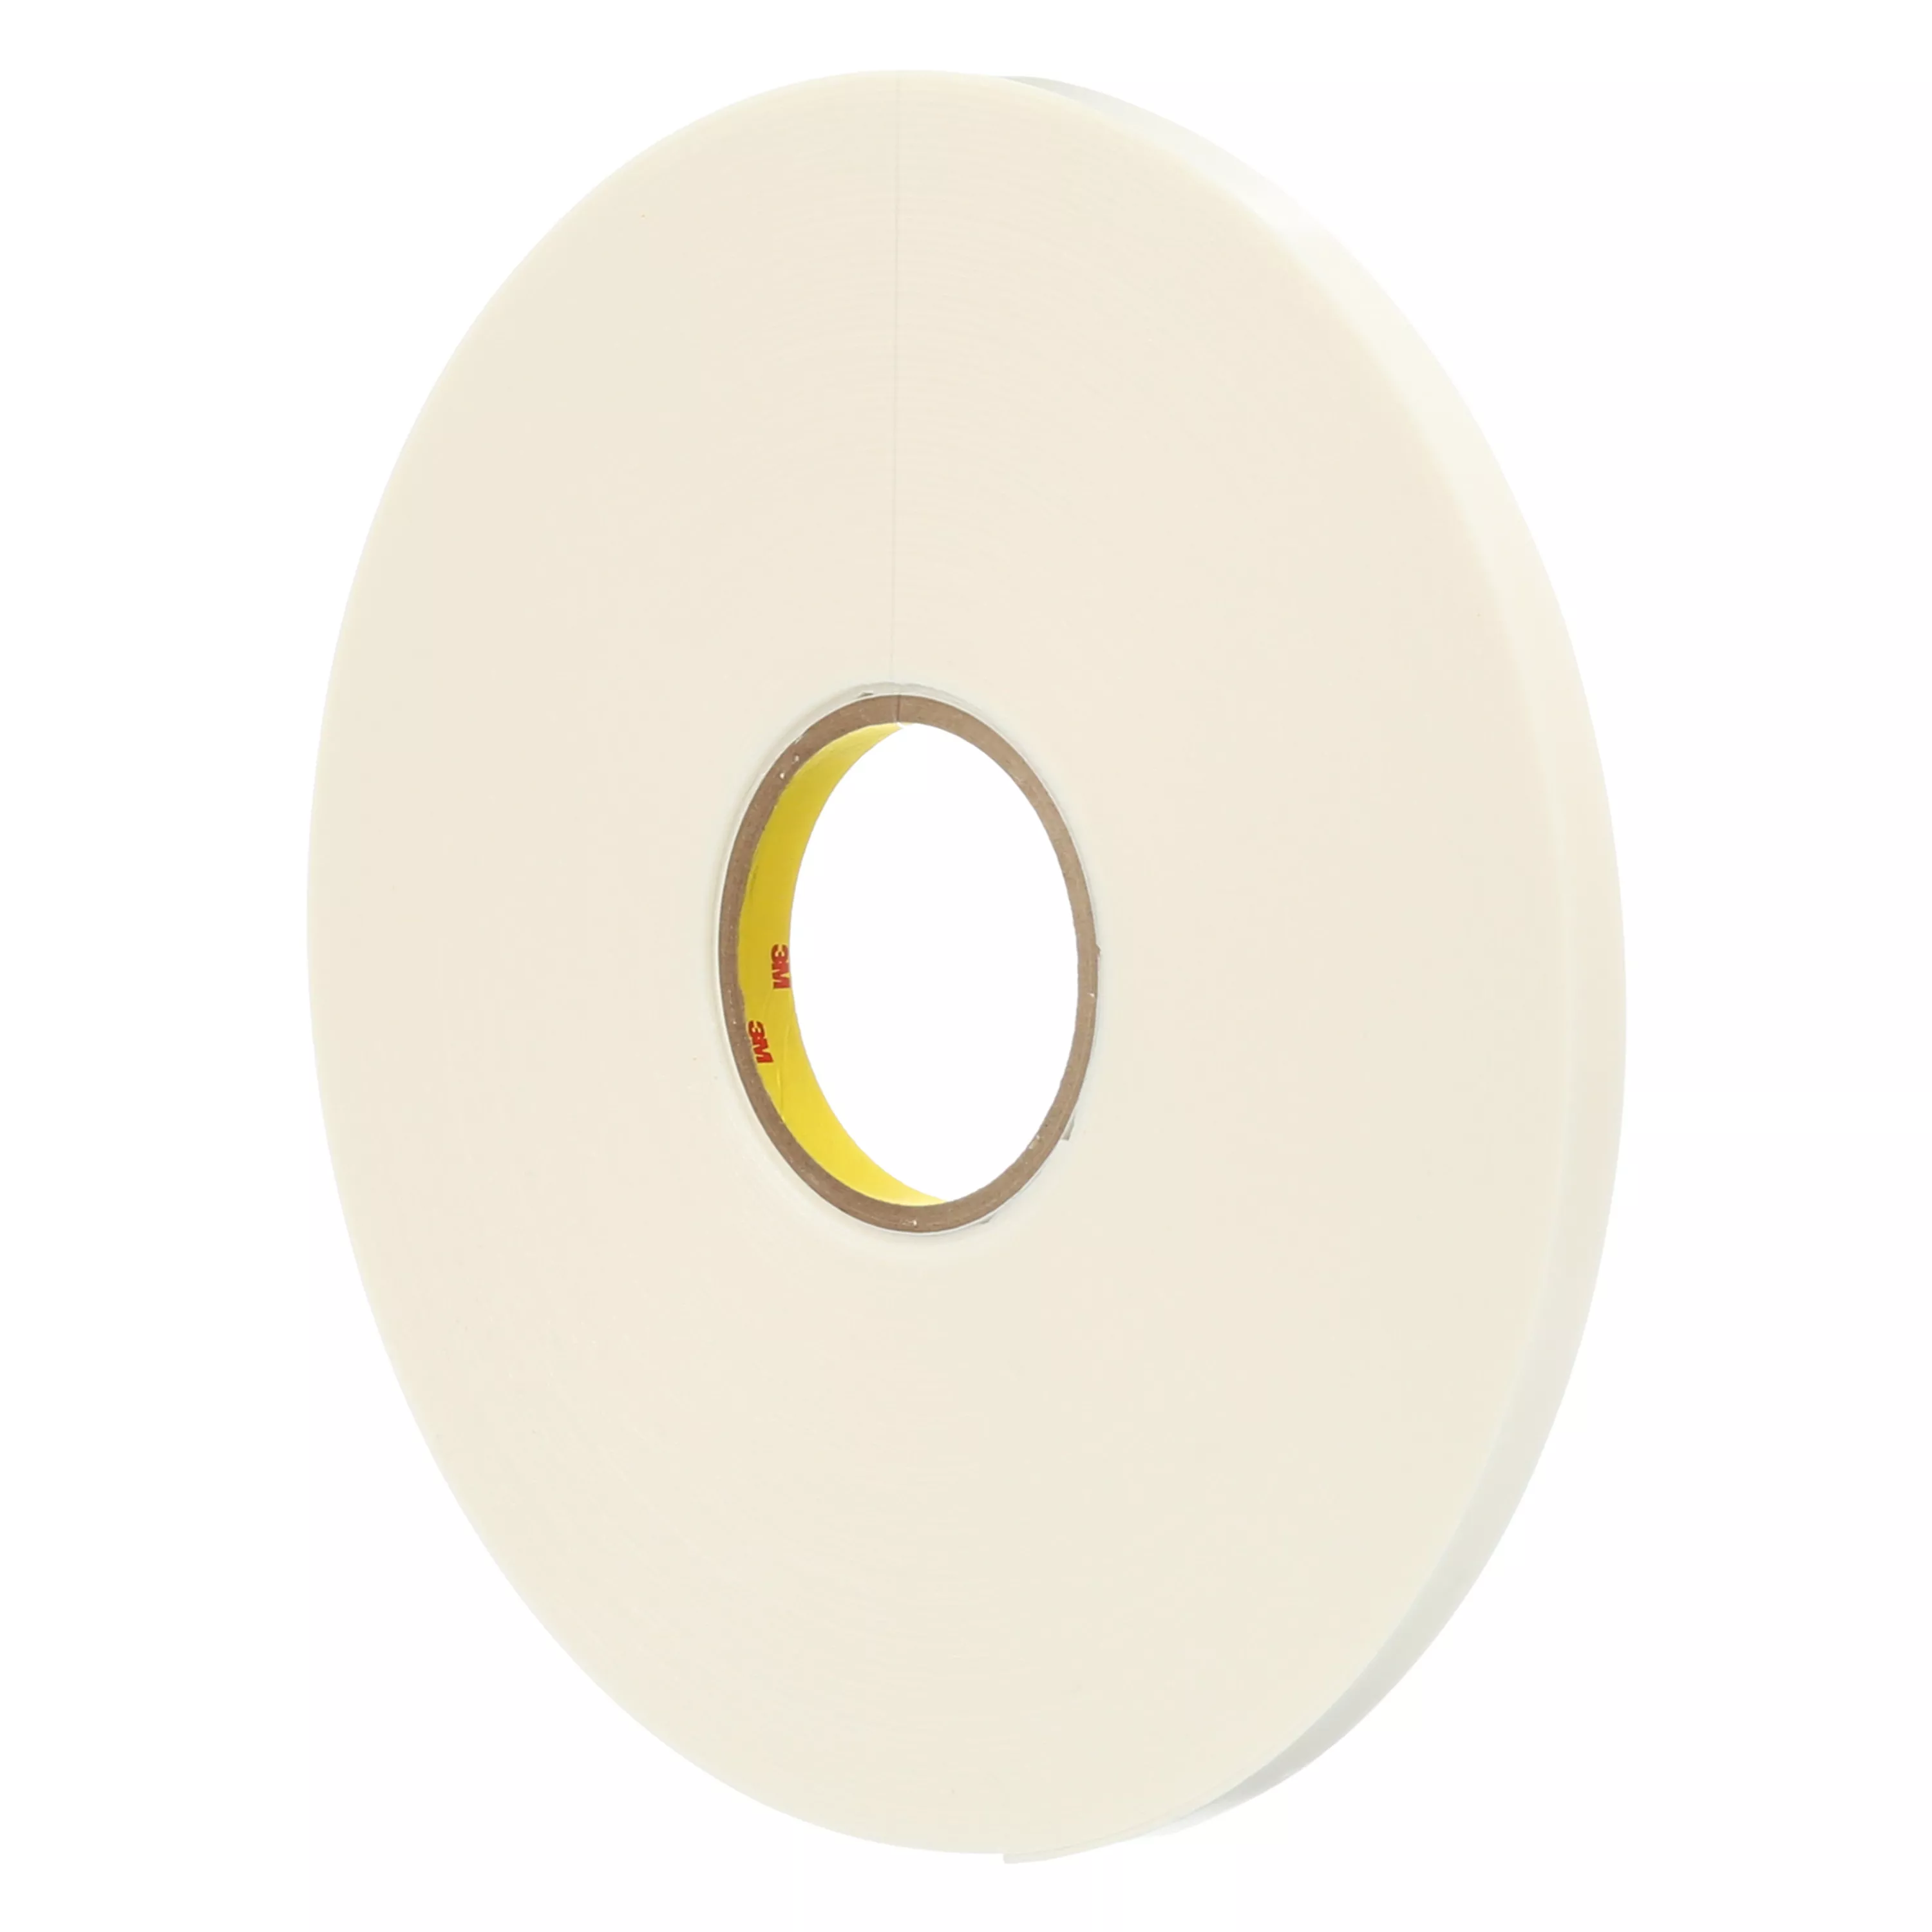 3M™ Double Coated Polyethylene Foam Tape 4466, White, 1/4 in x 36 yd, 62
mil, 36 Roll/Case